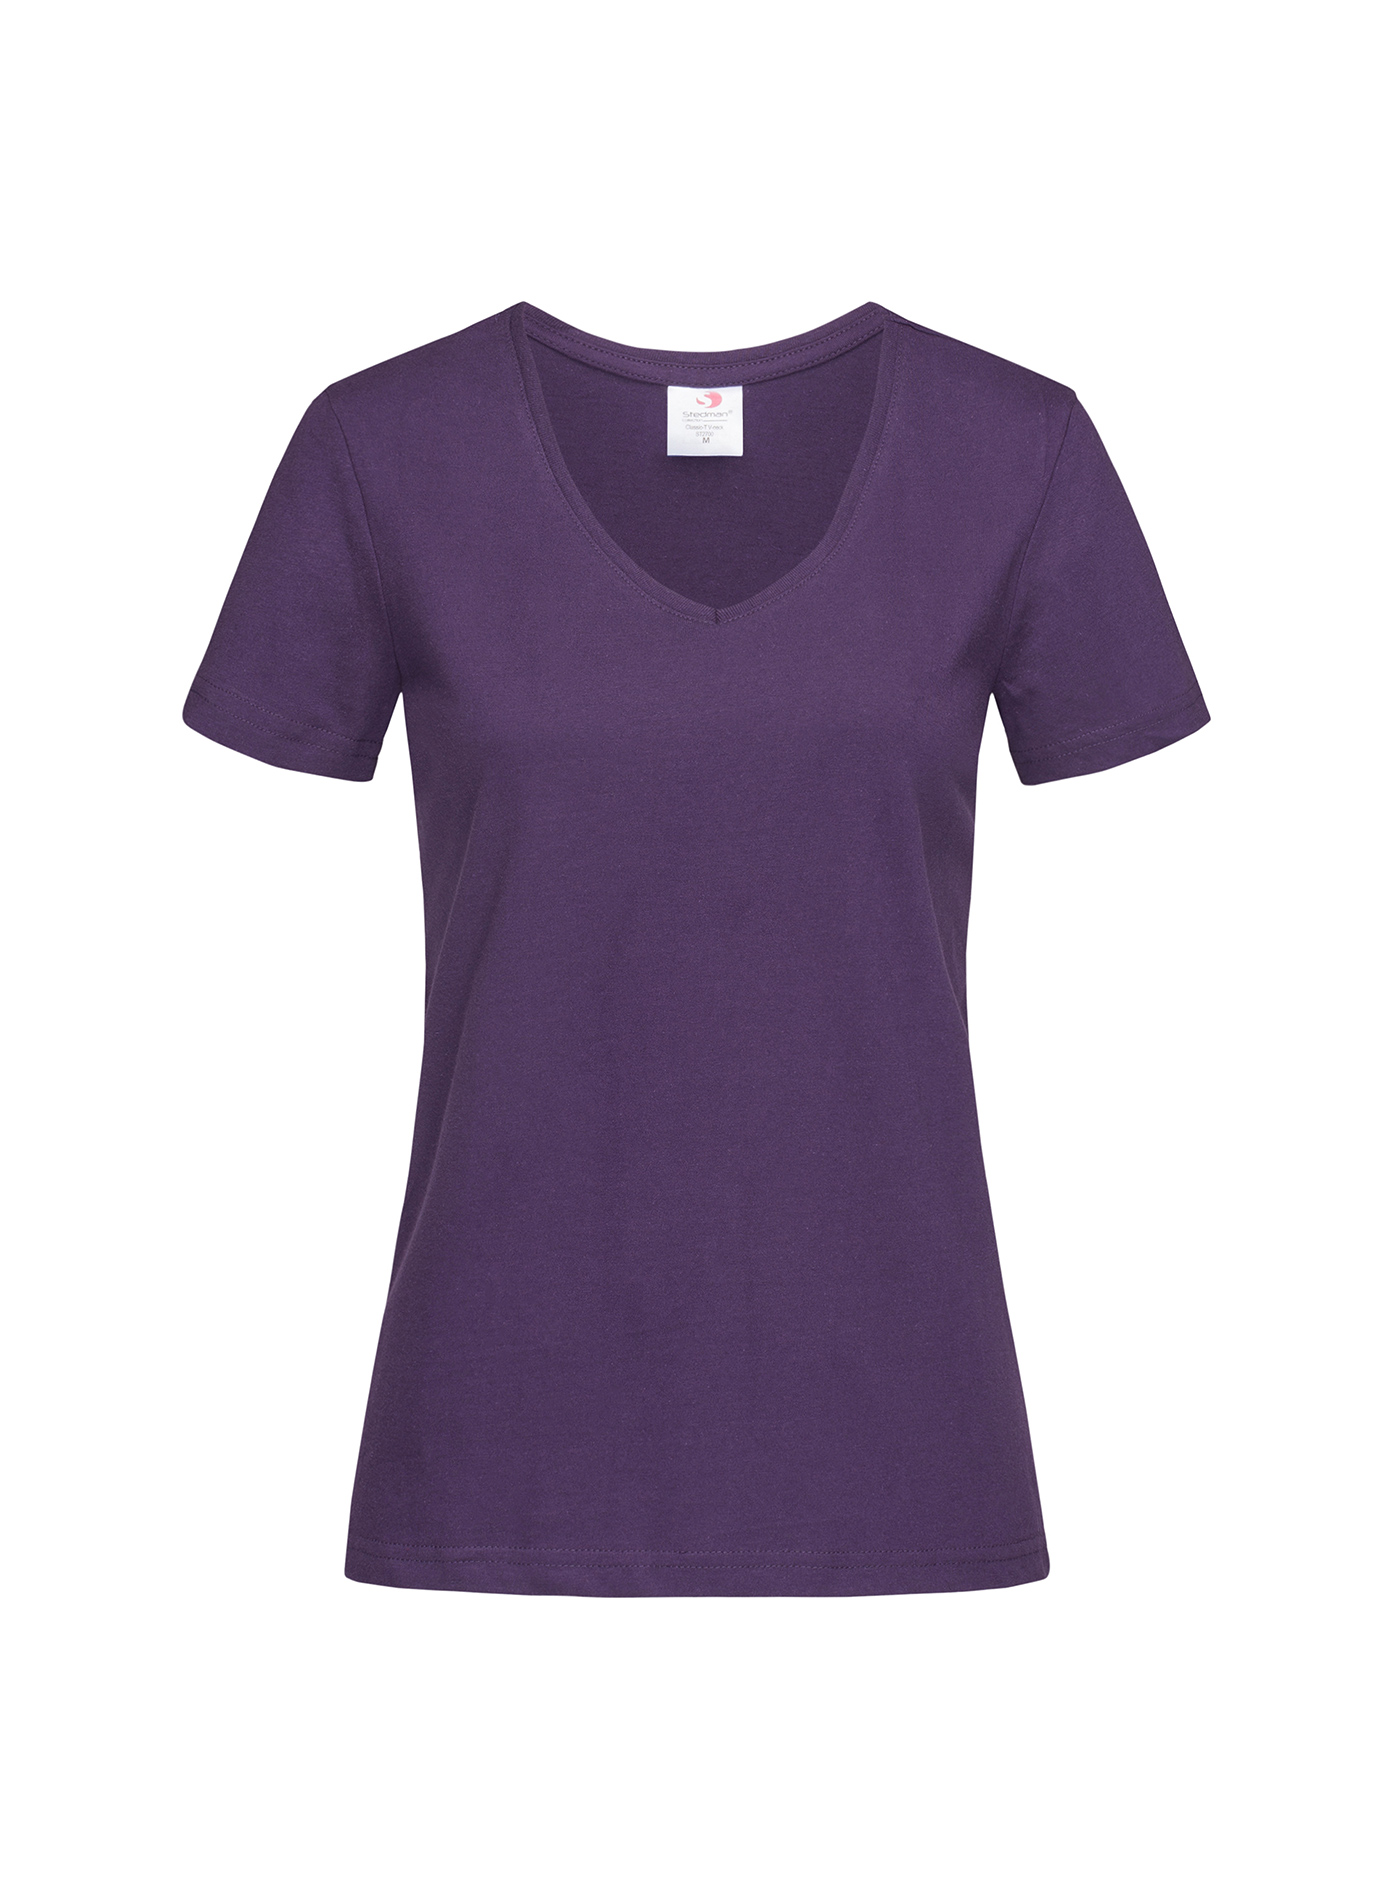 Dámské tričko s V-výstřihem Stedman - Tmavě fialová M